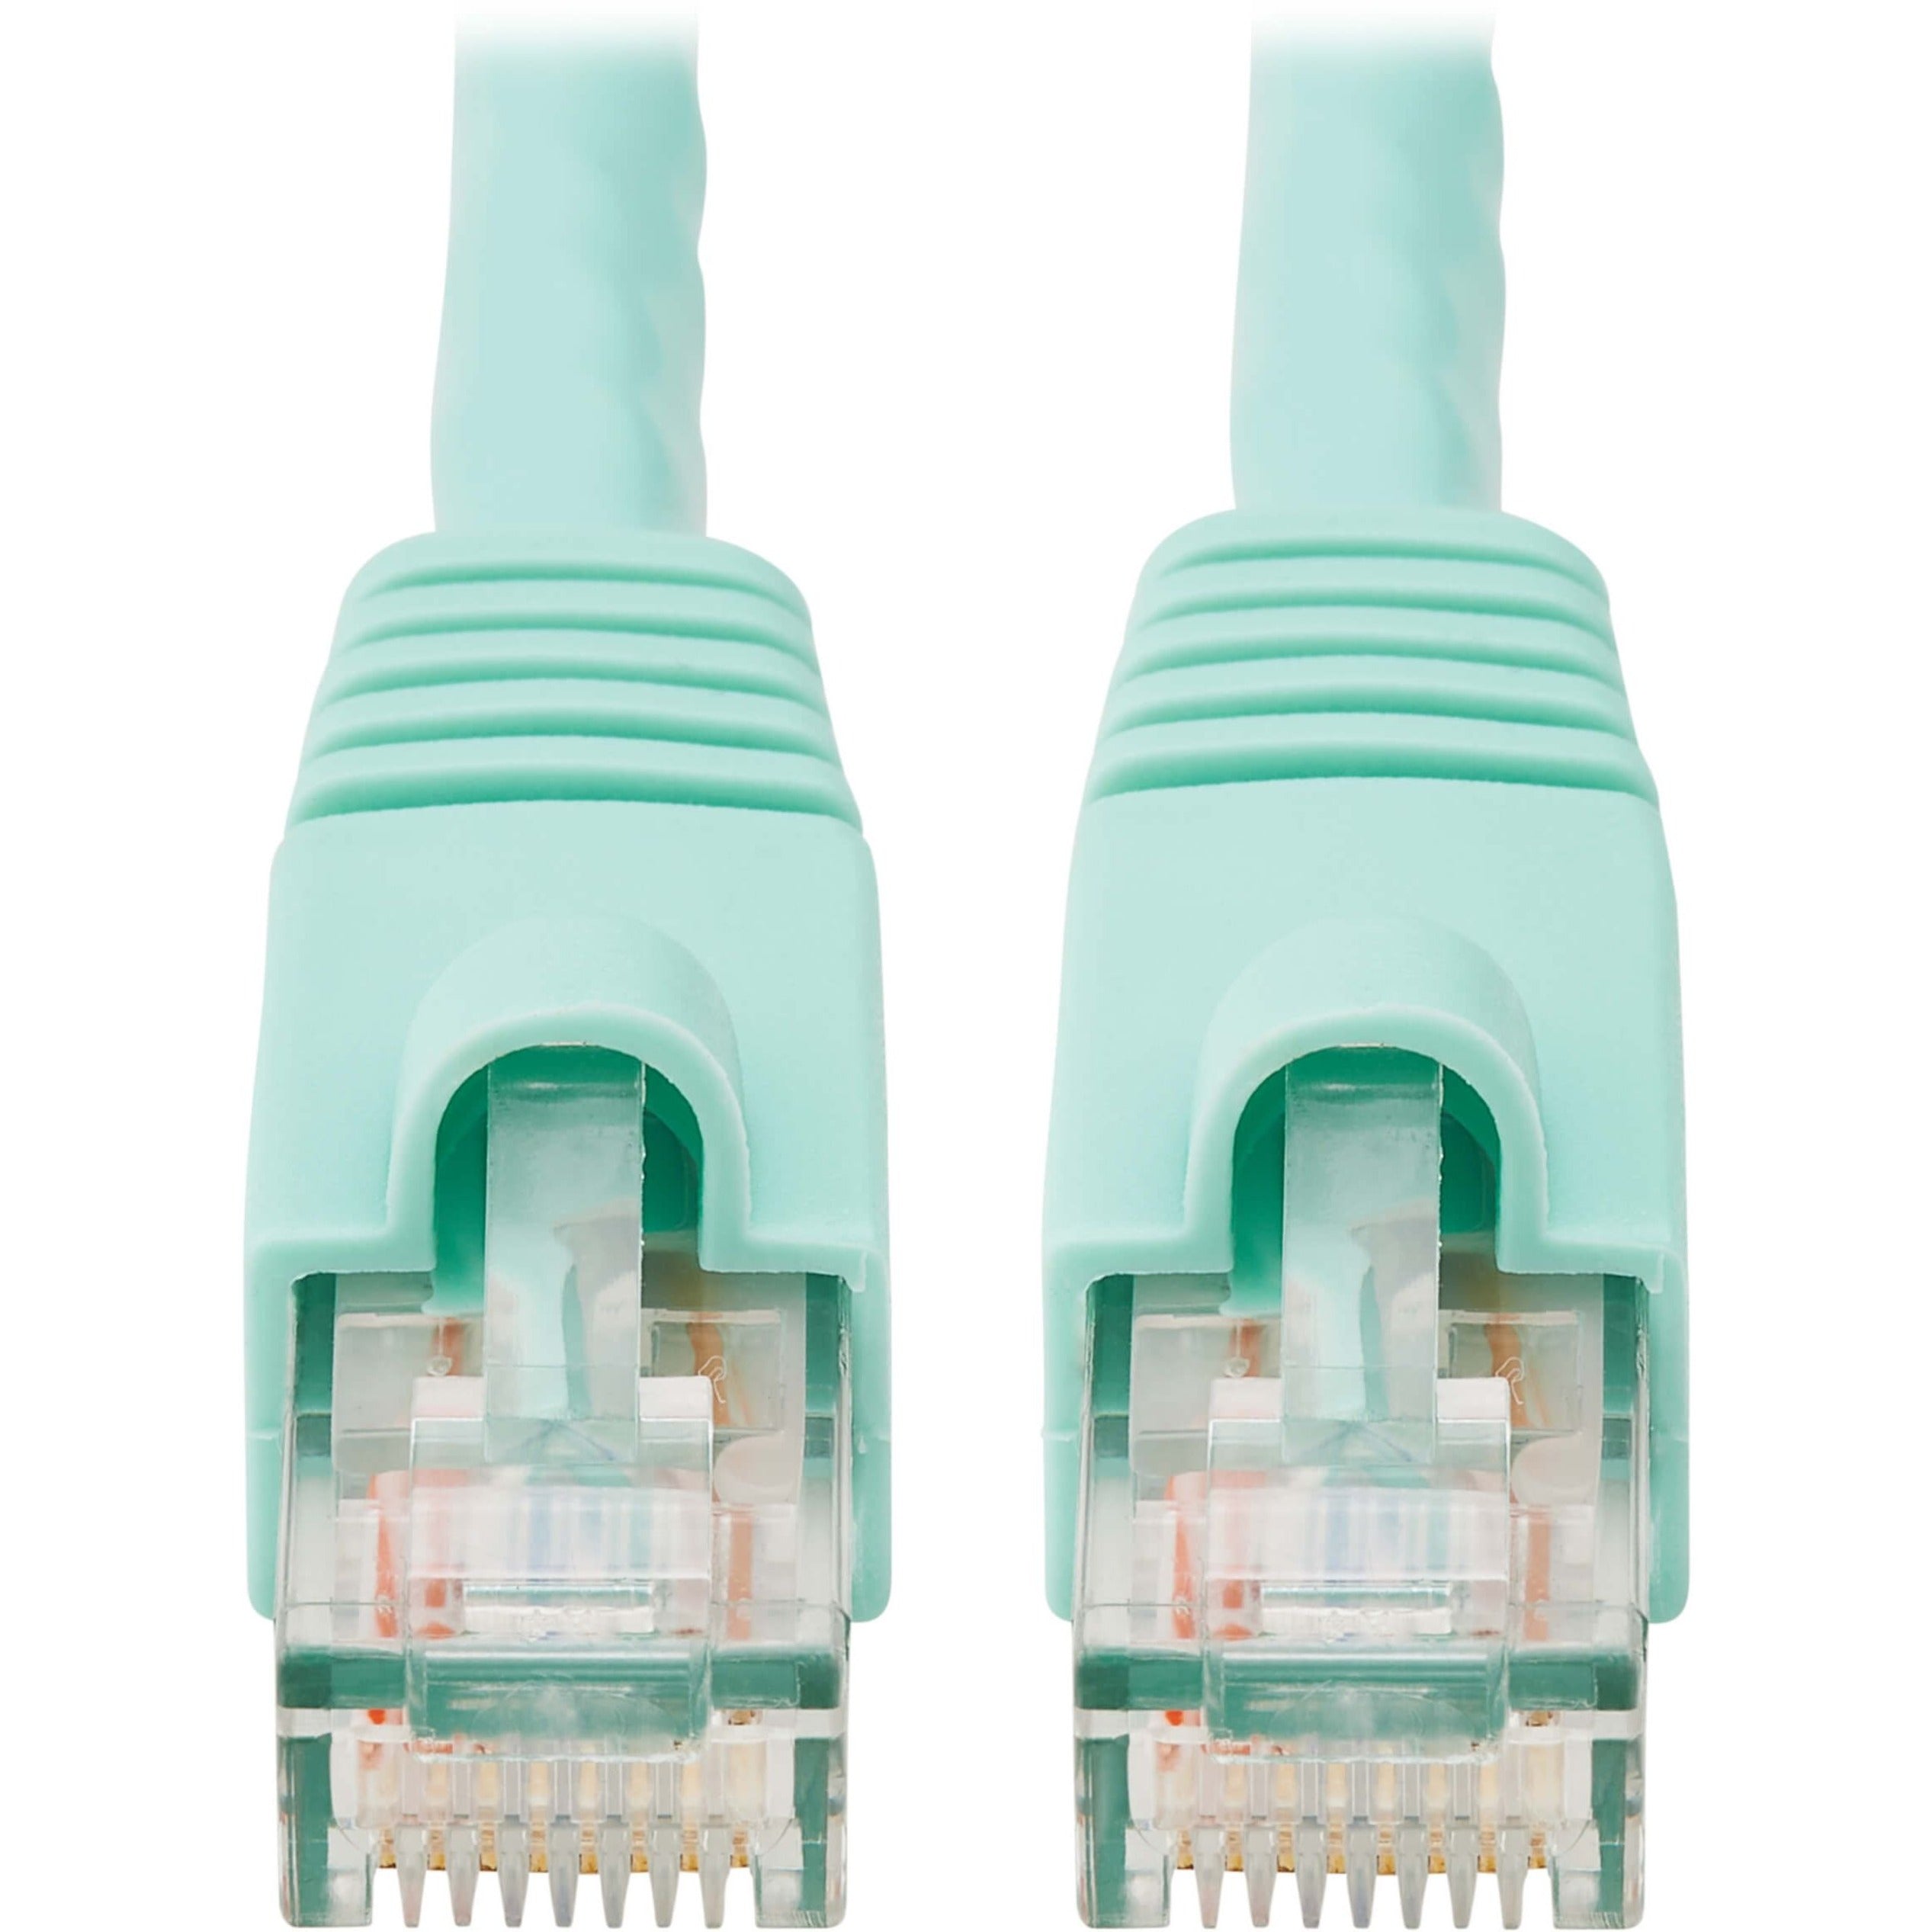 Tripp Lite N261-005-AQ 5英尺 Cat6a水绿色补丁电缆 10 Gbit/s数据传输速率 应变缓解 防劣损 品牌名称：Tripp Lite 品牌翻译：Tripp Lite